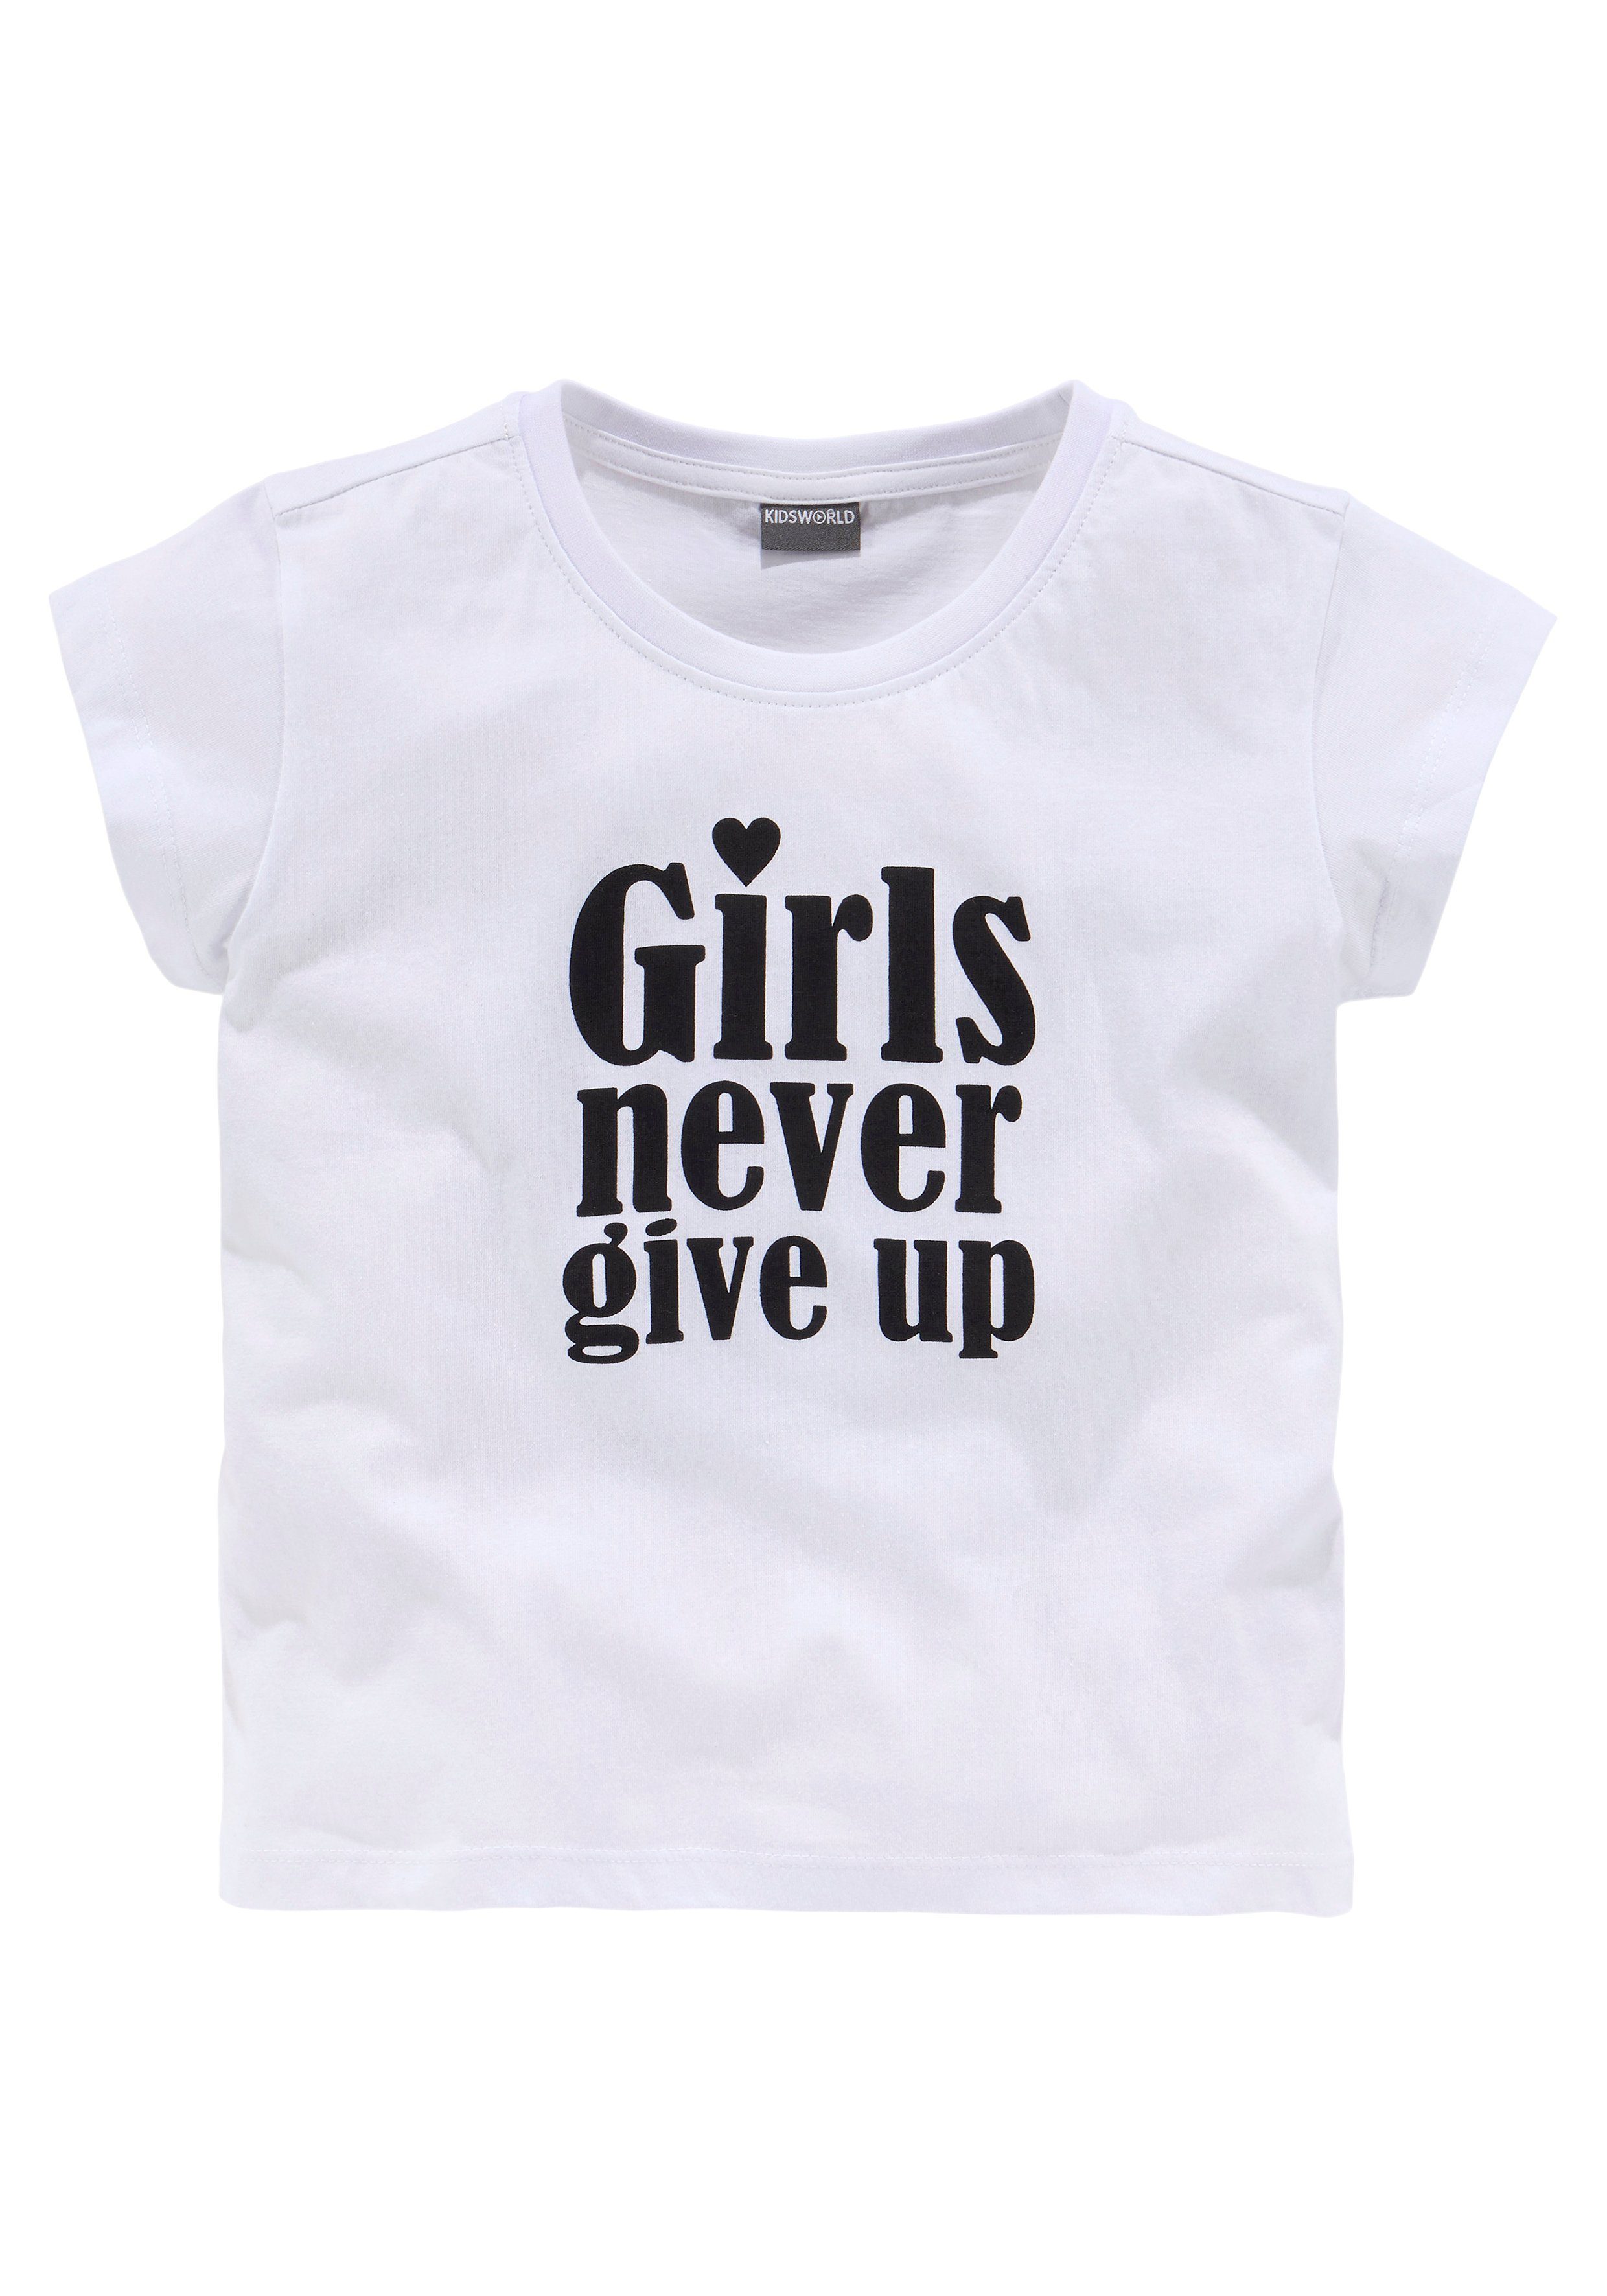 KIDSWORLD T-Shirt Girls nerver give up kurze Form modische